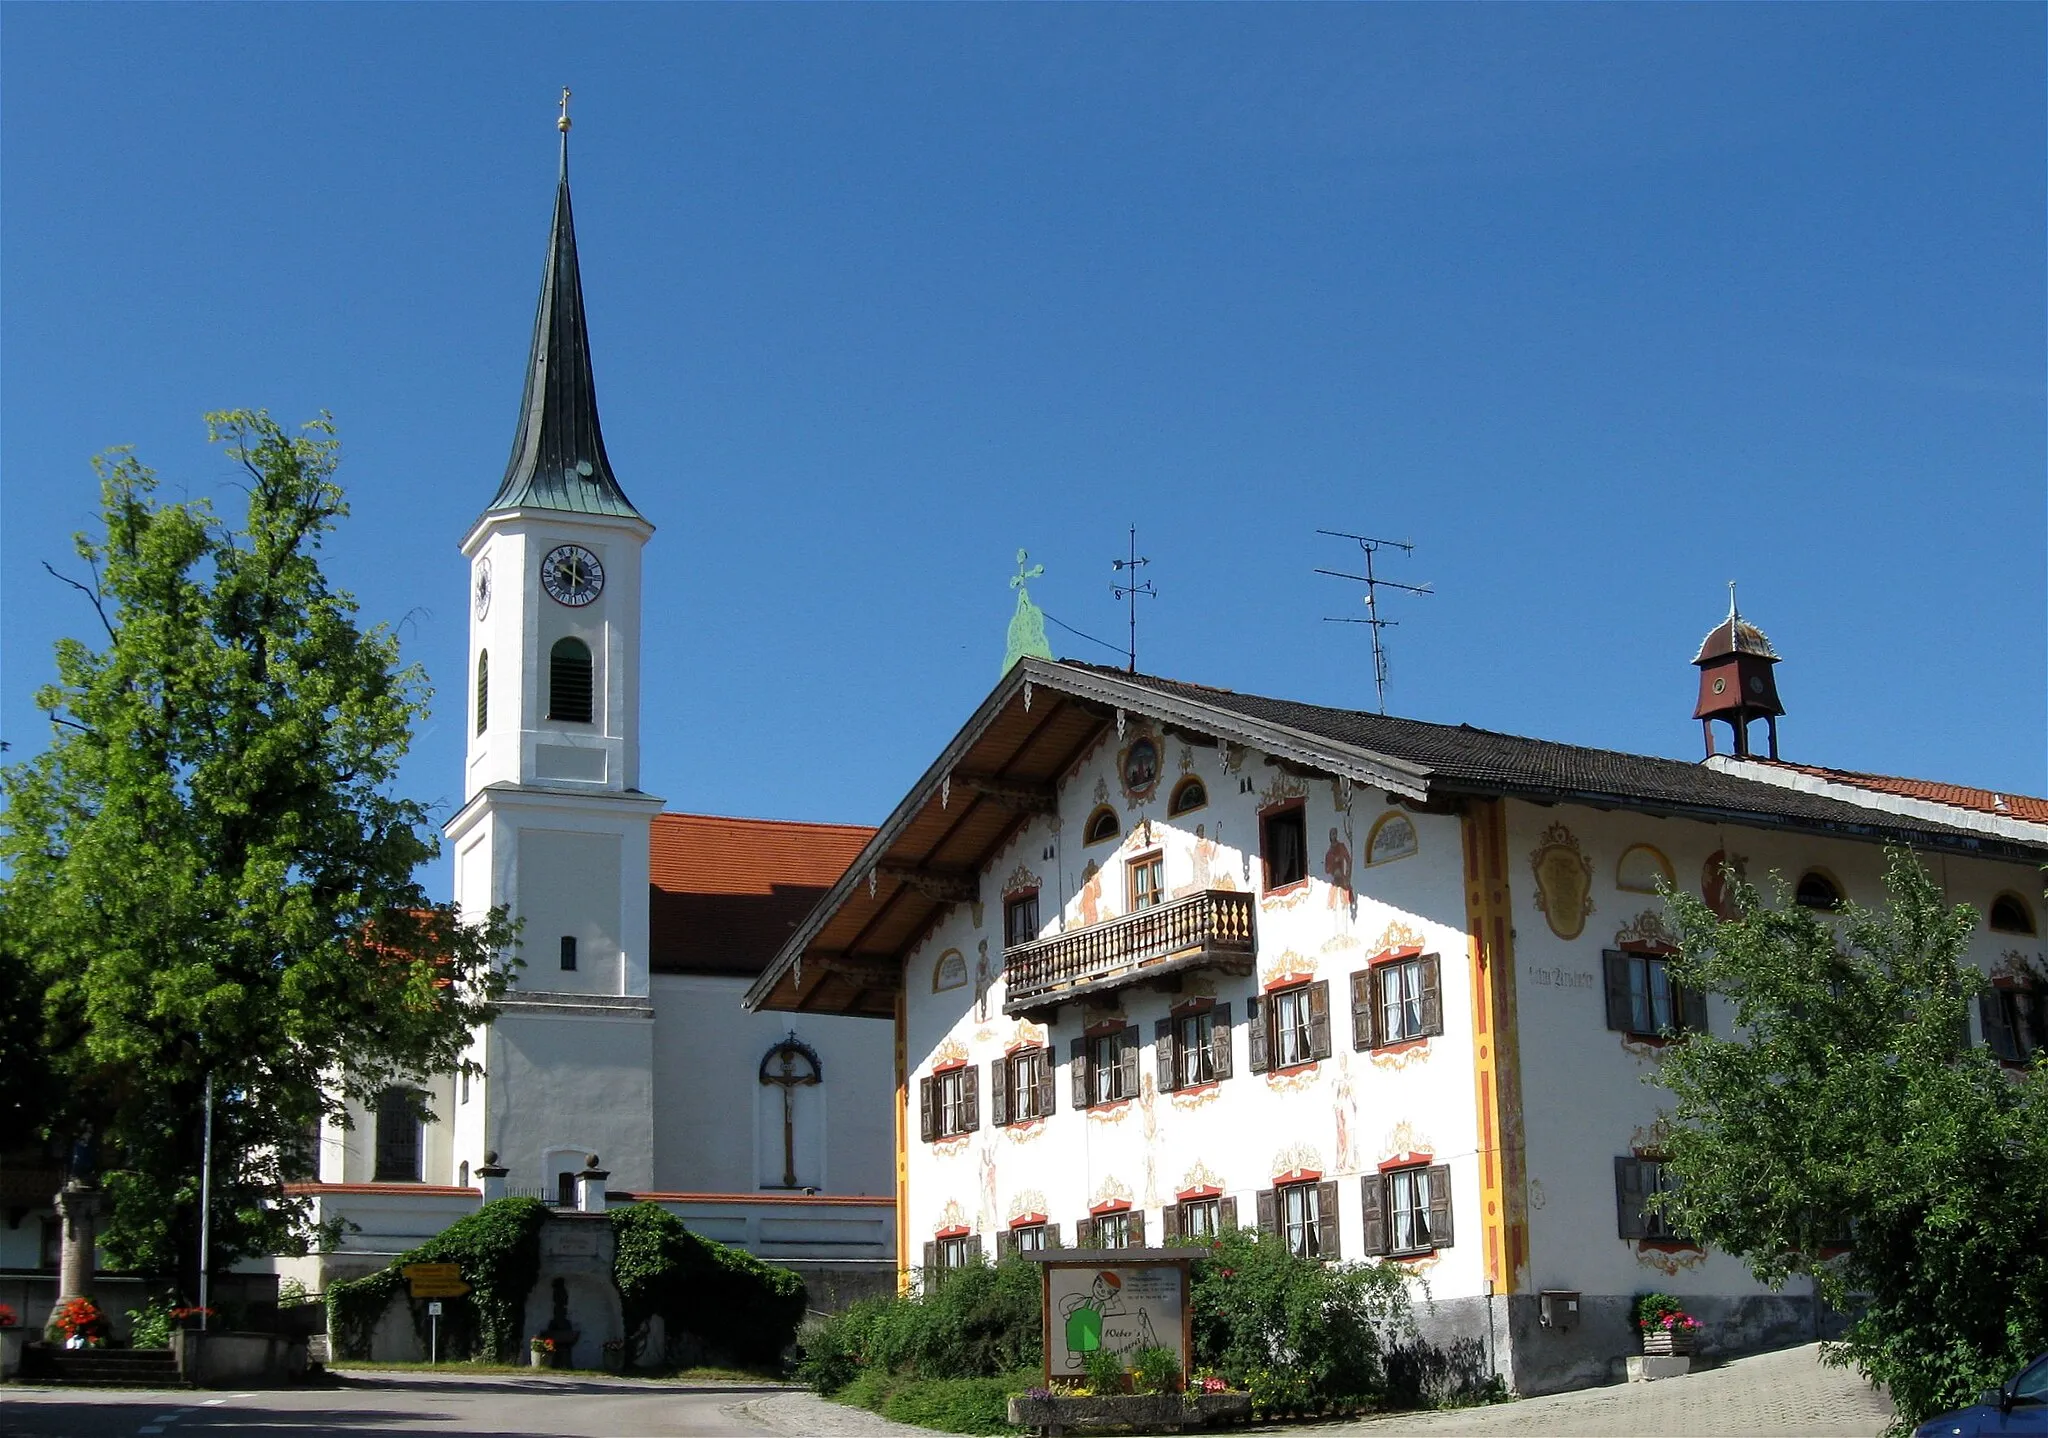 Photo showing: Endlhausen; Wolfratshauser Straße 1; Kath. Pfarrkirche St. Valentin; Wolfratshauser Straße 2; stattliches Bauernhaus